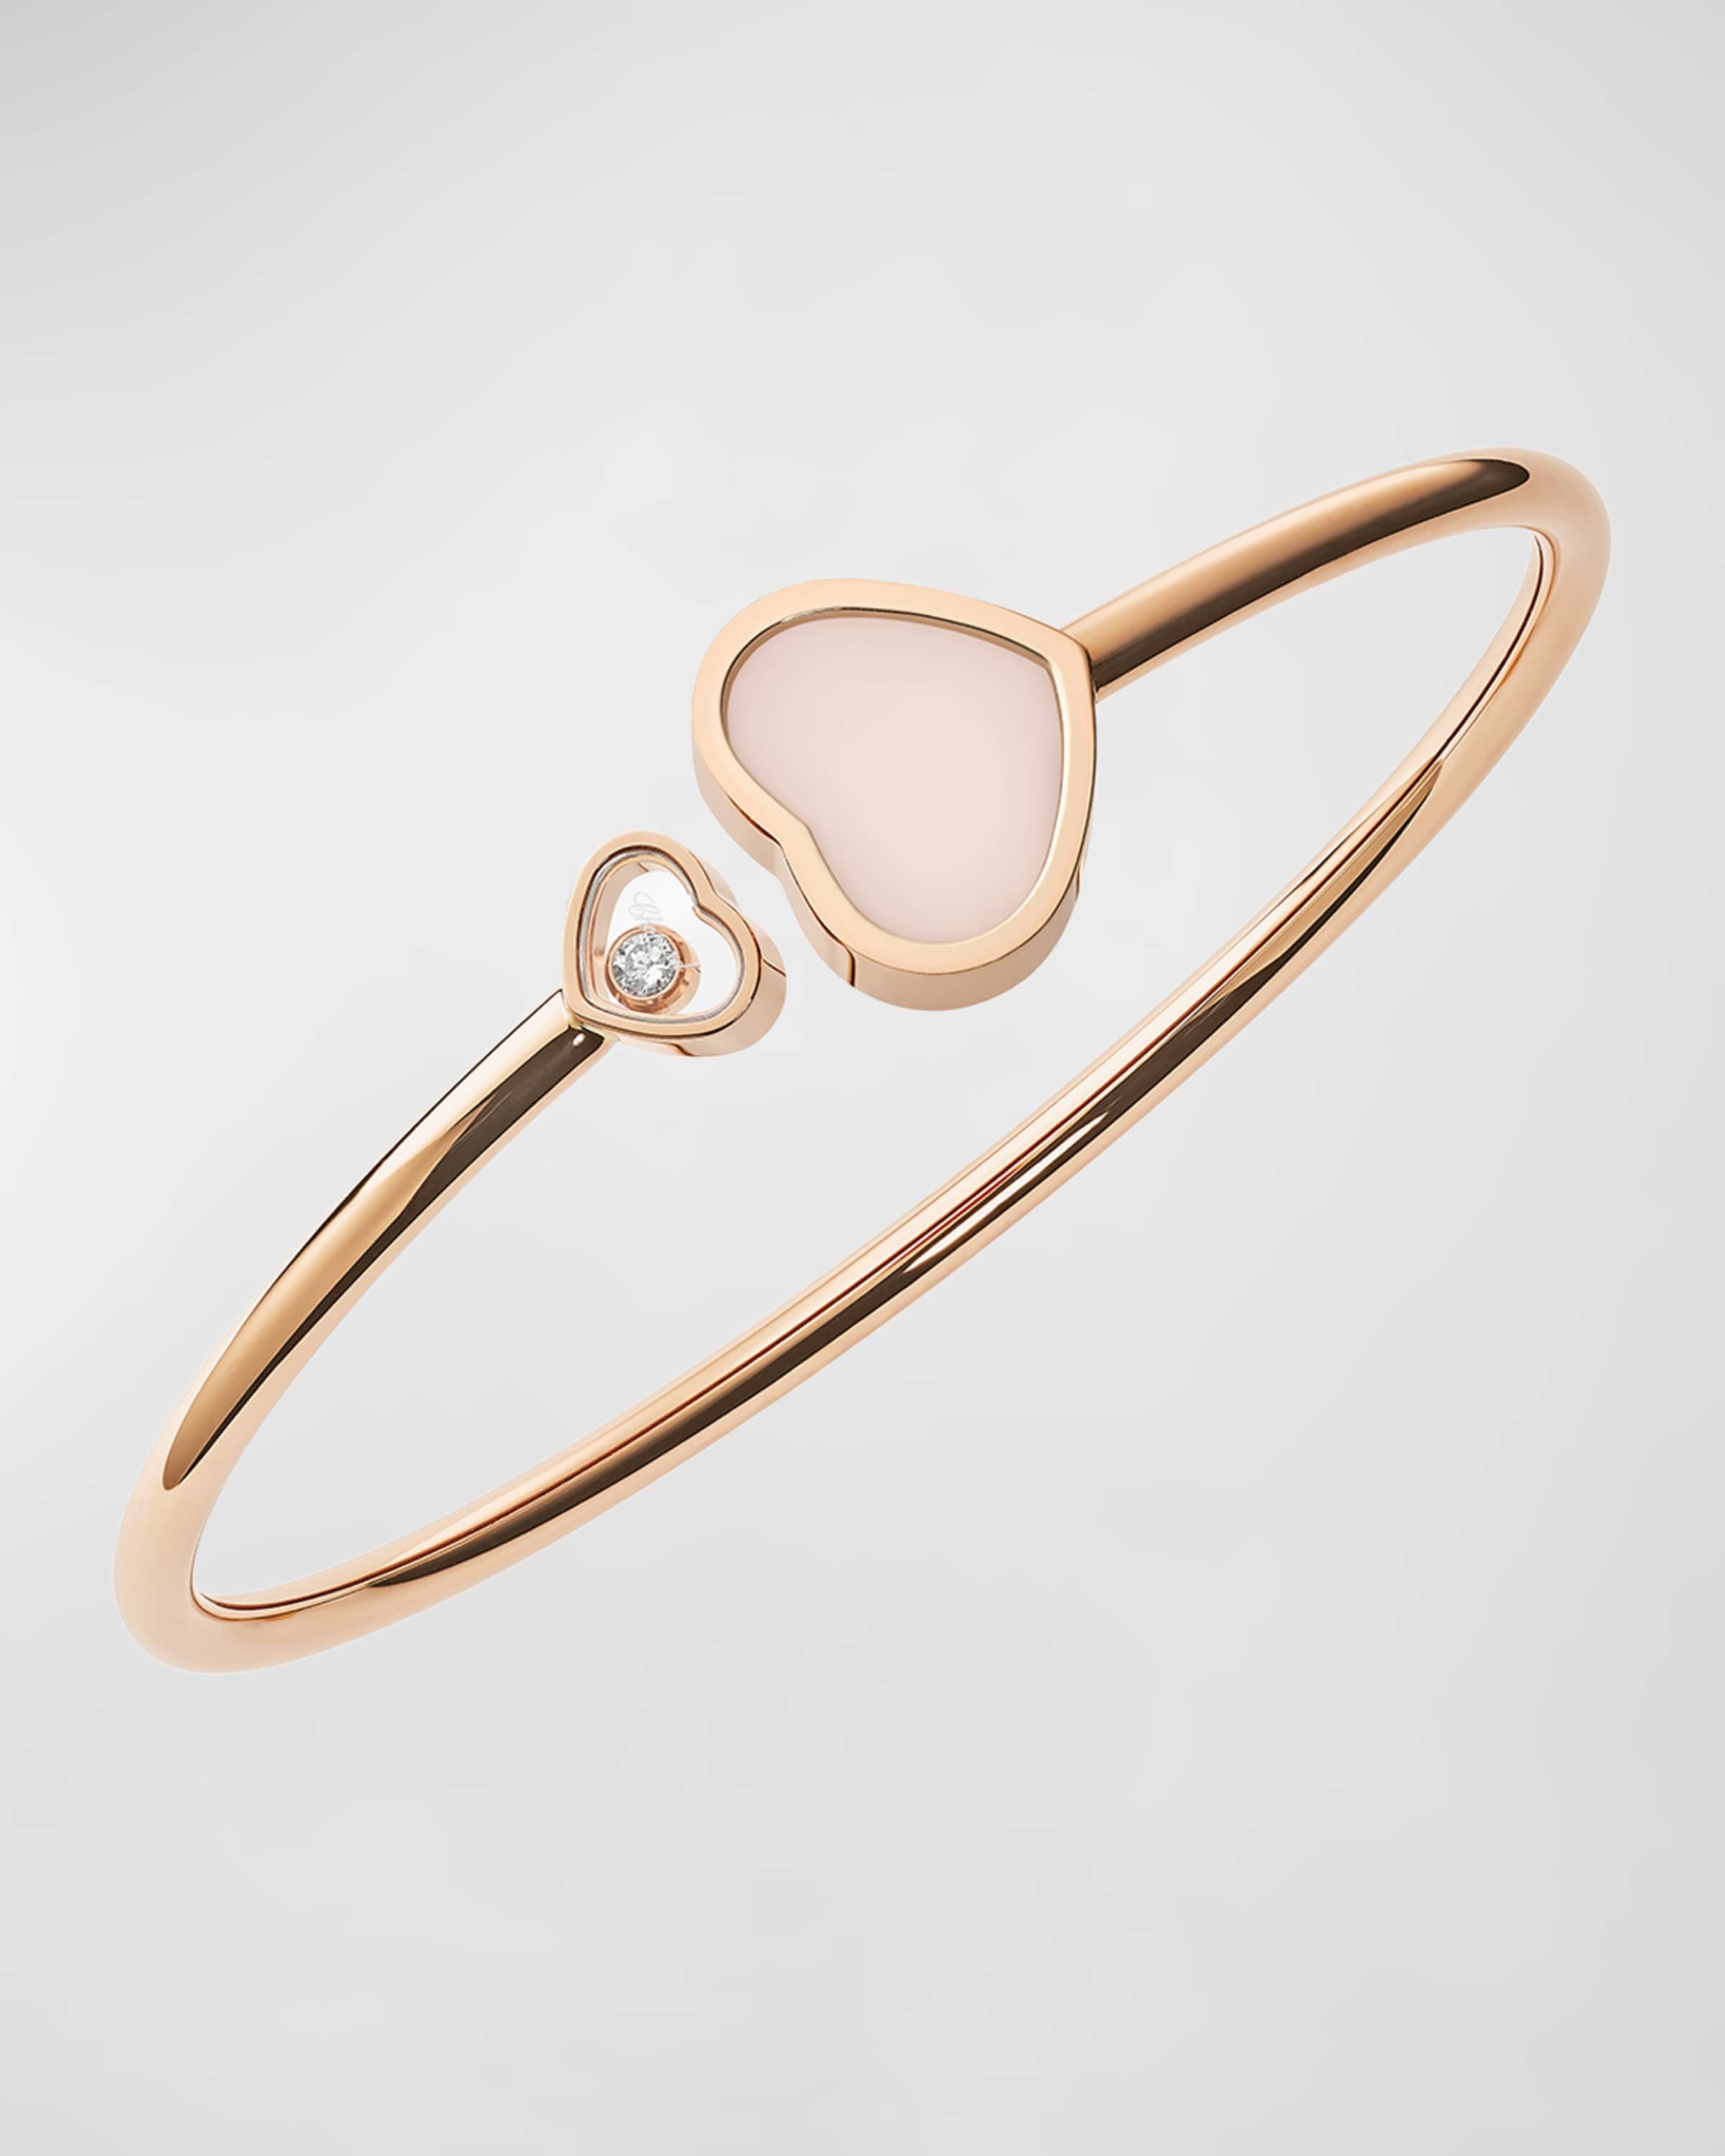 Happy Hearts 18K Rose Gold Pink Opal & Diamond Bracelet, Size Medium - 1